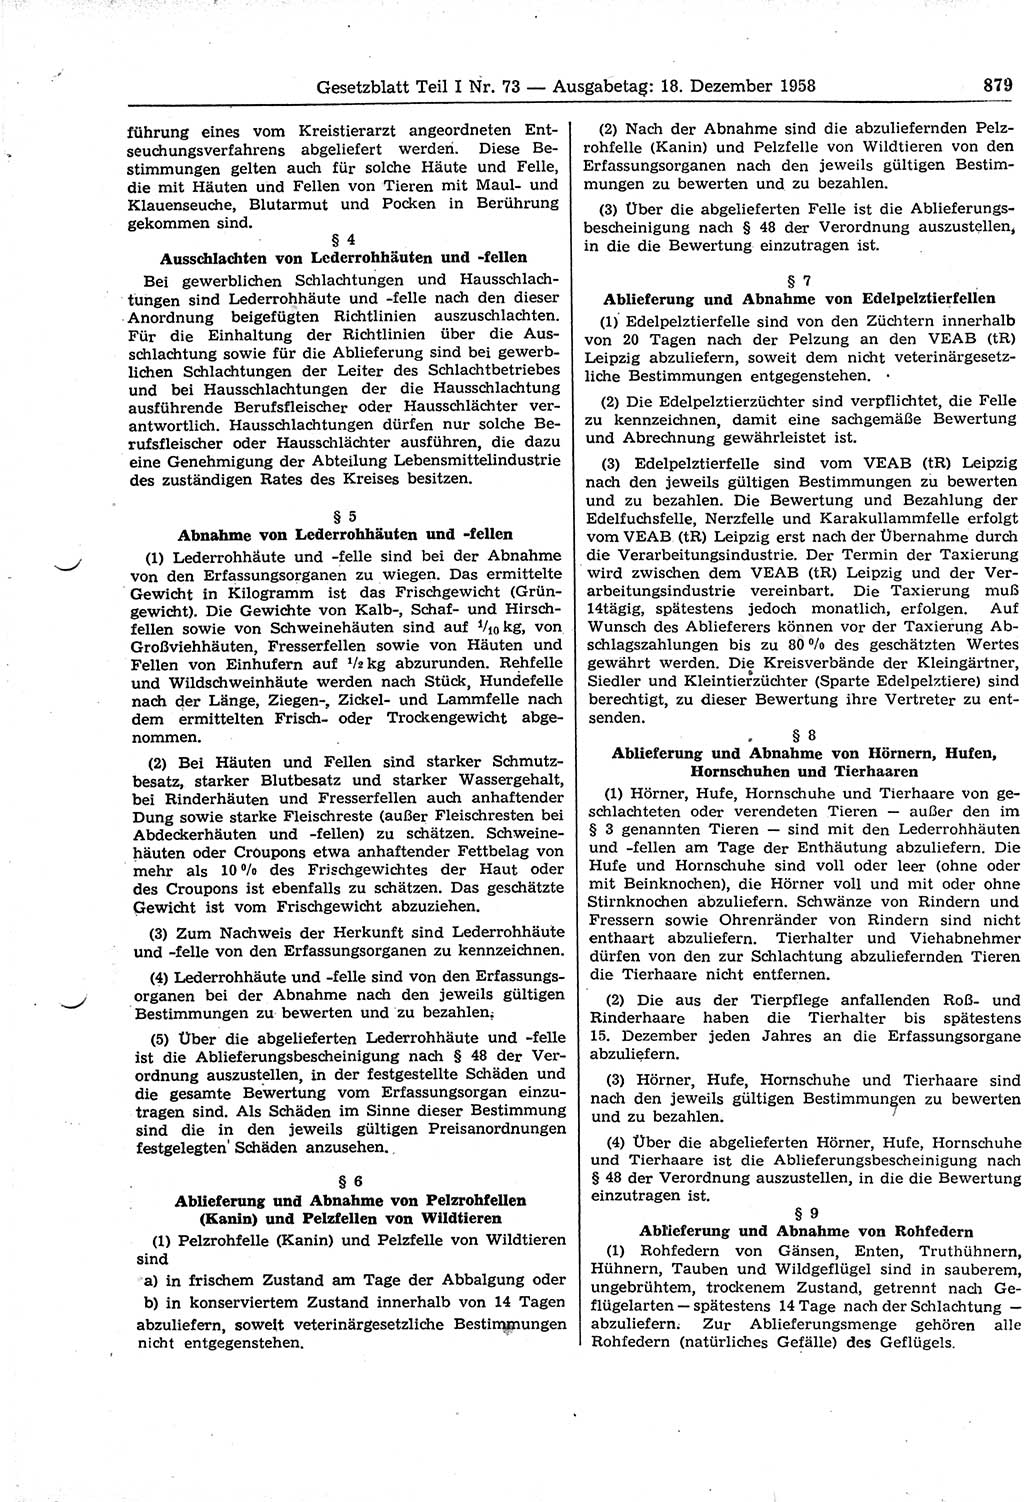 Gesetzblatt (GBl.) der Deutschen Demokratischen Republik (DDR) Teil Ⅰ 1958, Seite 879 (GBl. DDR Ⅰ 1958, S. 879)